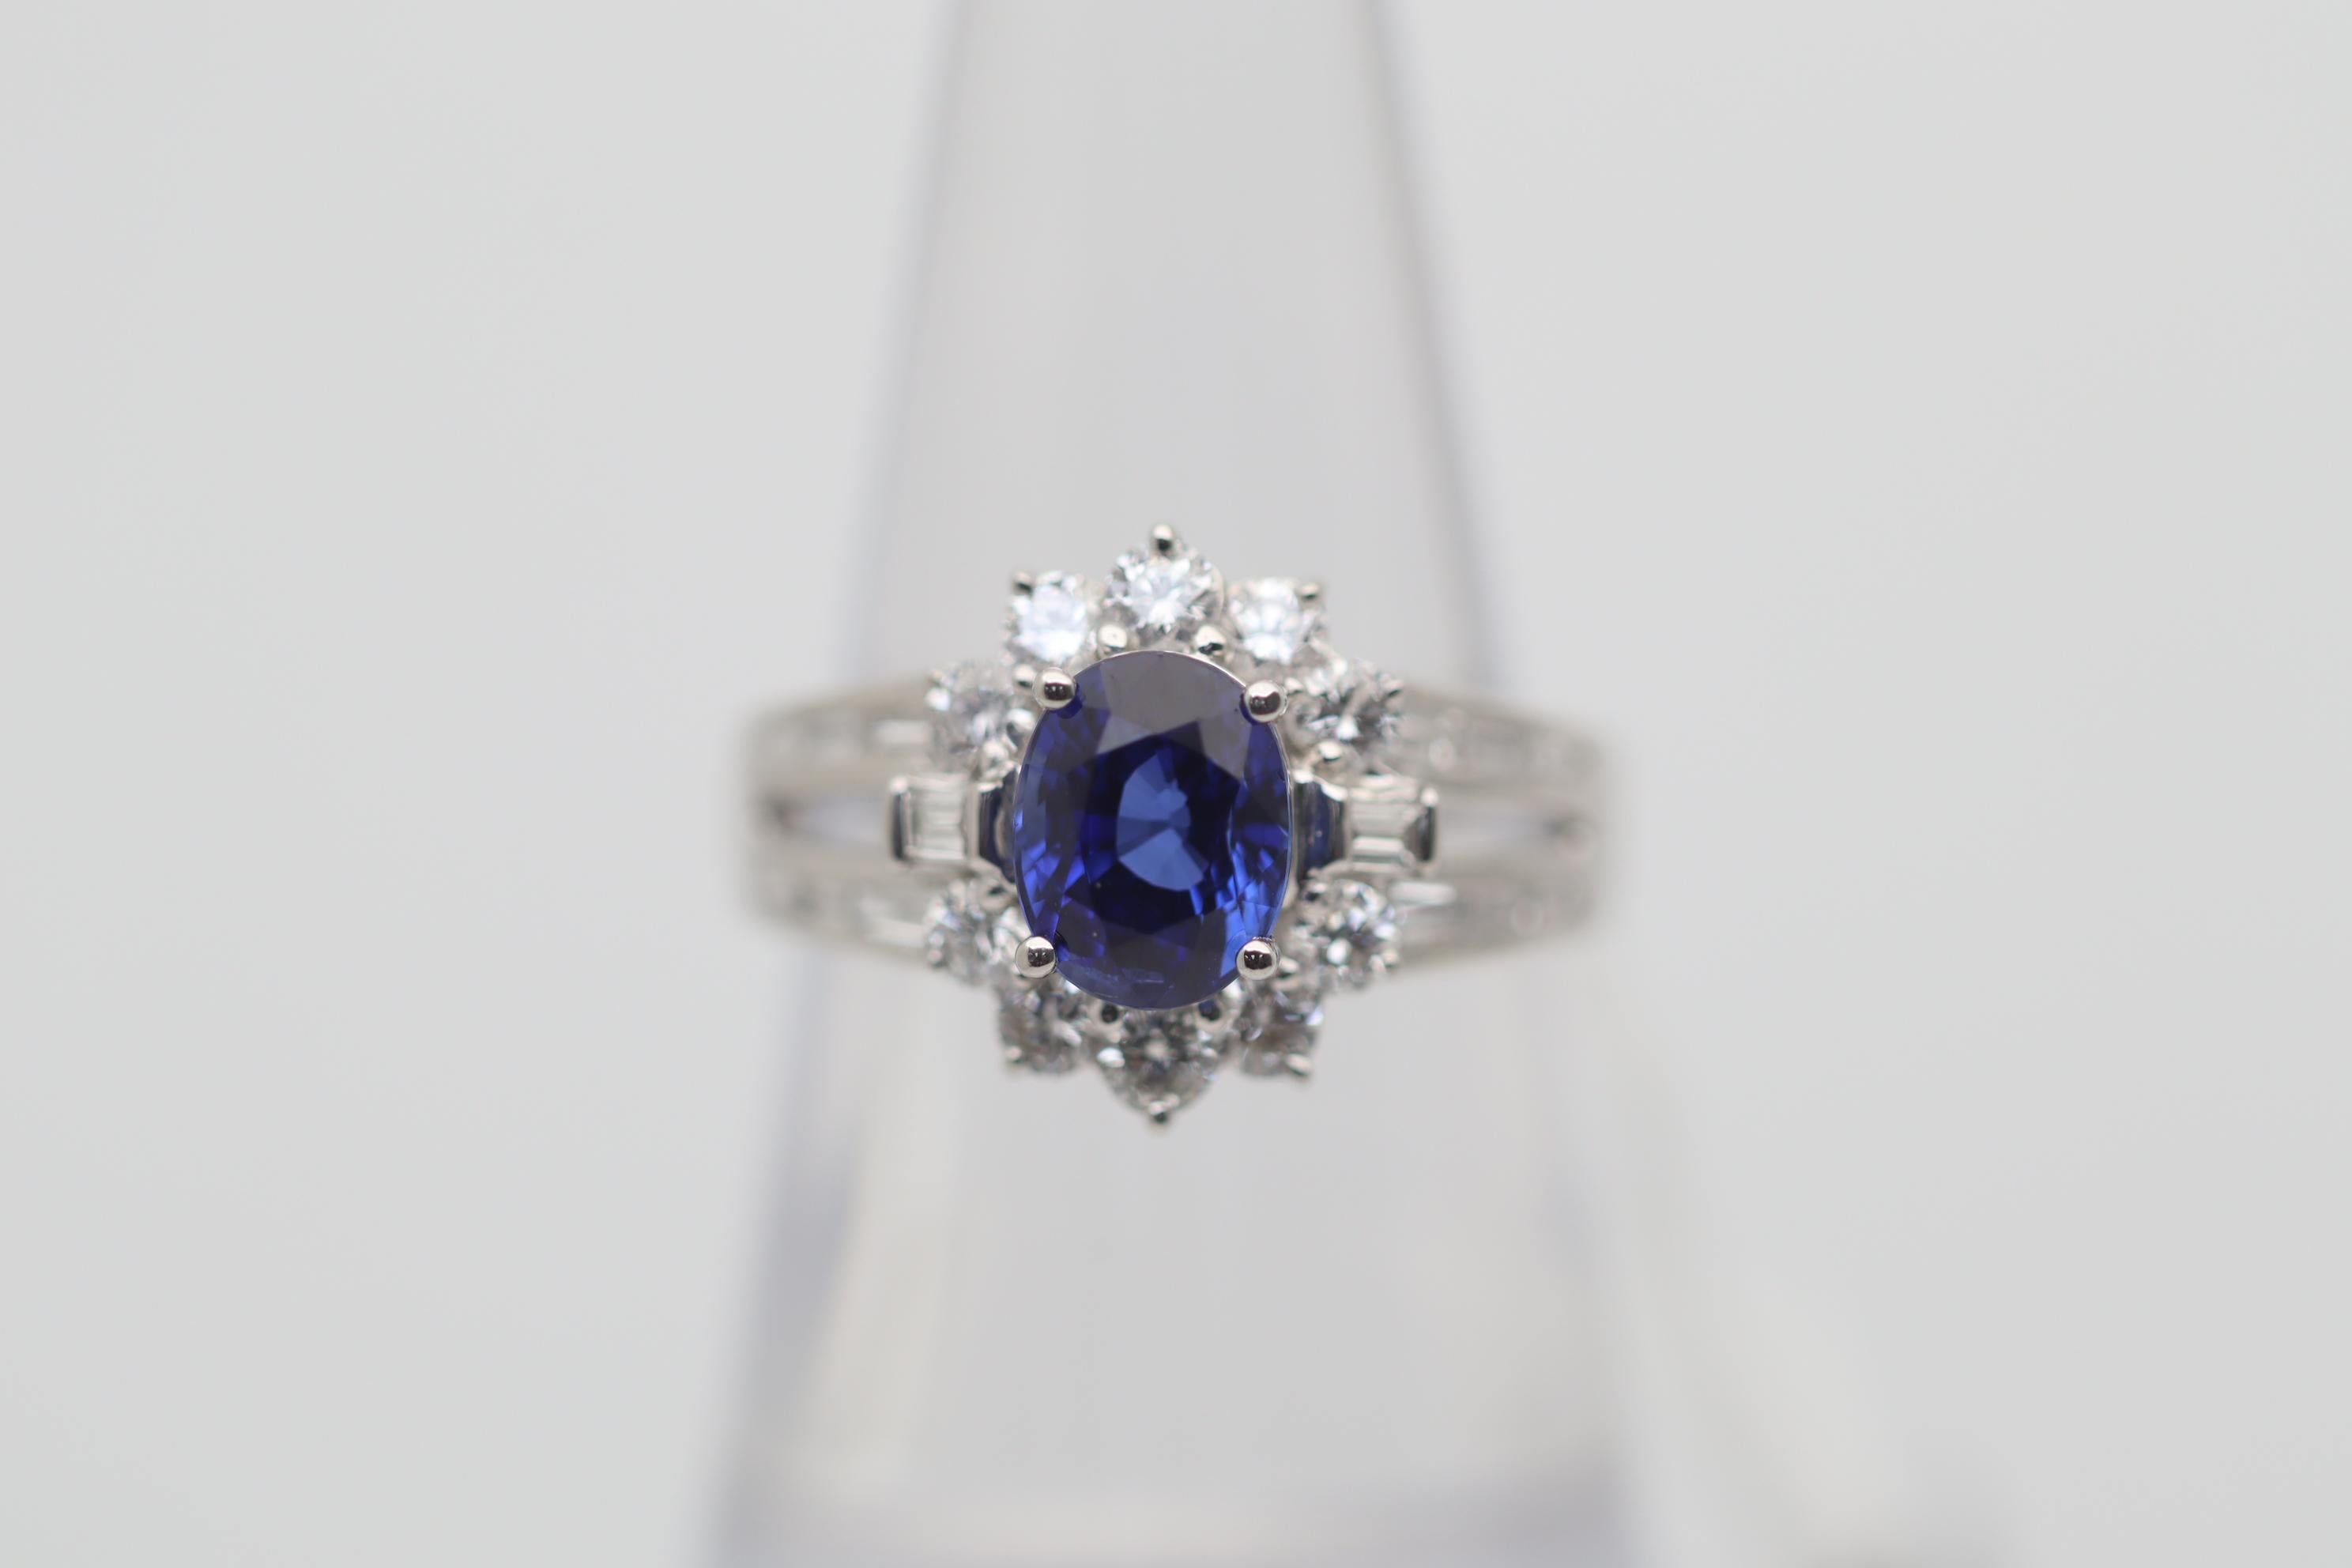 Ein prächtiger blauer Saphir von besonders feiner Qualität steht im Mittelpunkt dieses platinfarbenen Rings. Der Saphir wiegt 2,00 Karat und hat die perfekte blaue Farbe, die reich, hell und glänzend ist, eine der schönsten, die wir gesehen haben.